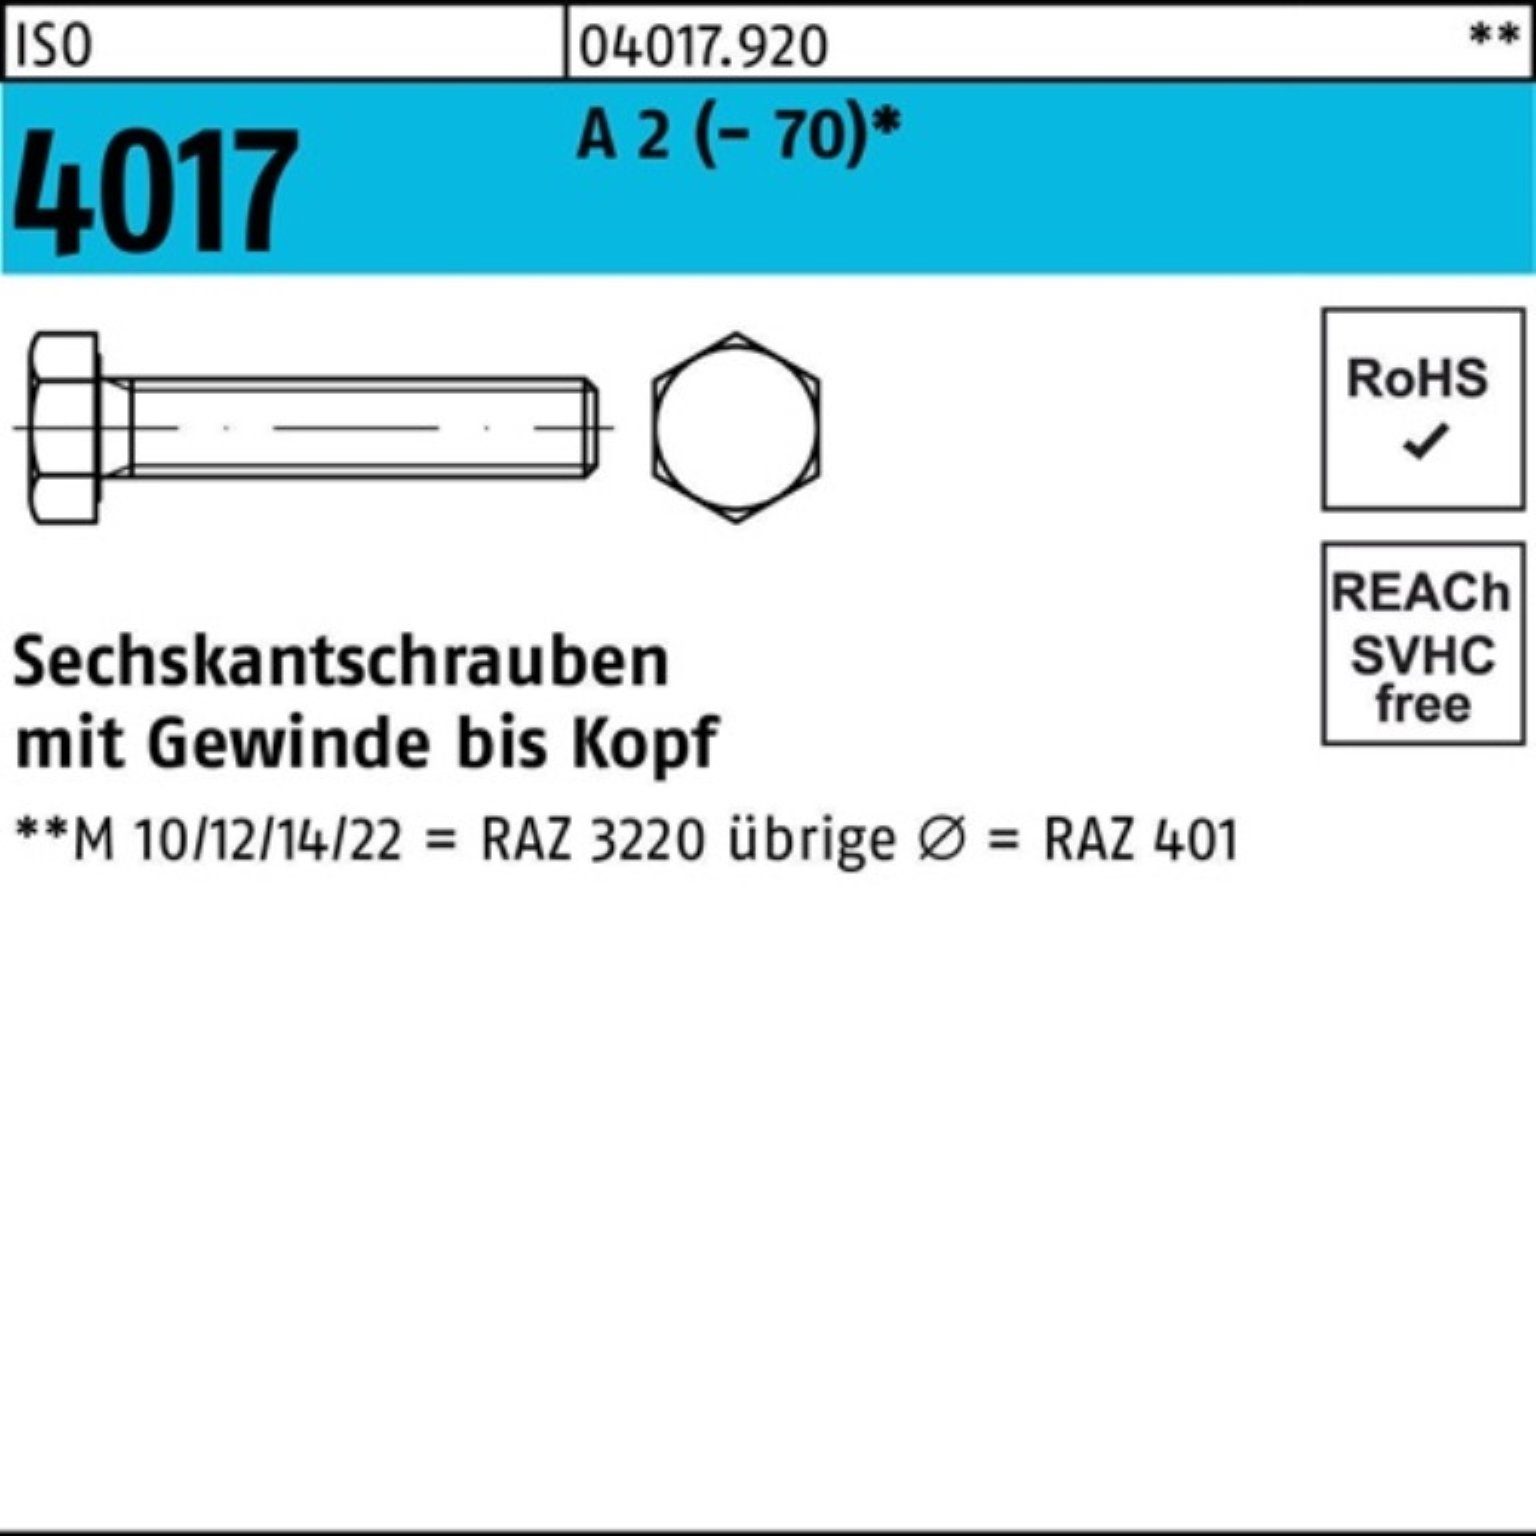 Bufab Sechskantschraube 100er Pack Sechskantschraube ISO 4017 VG M5x 30 A 2 (70) 100 Stück